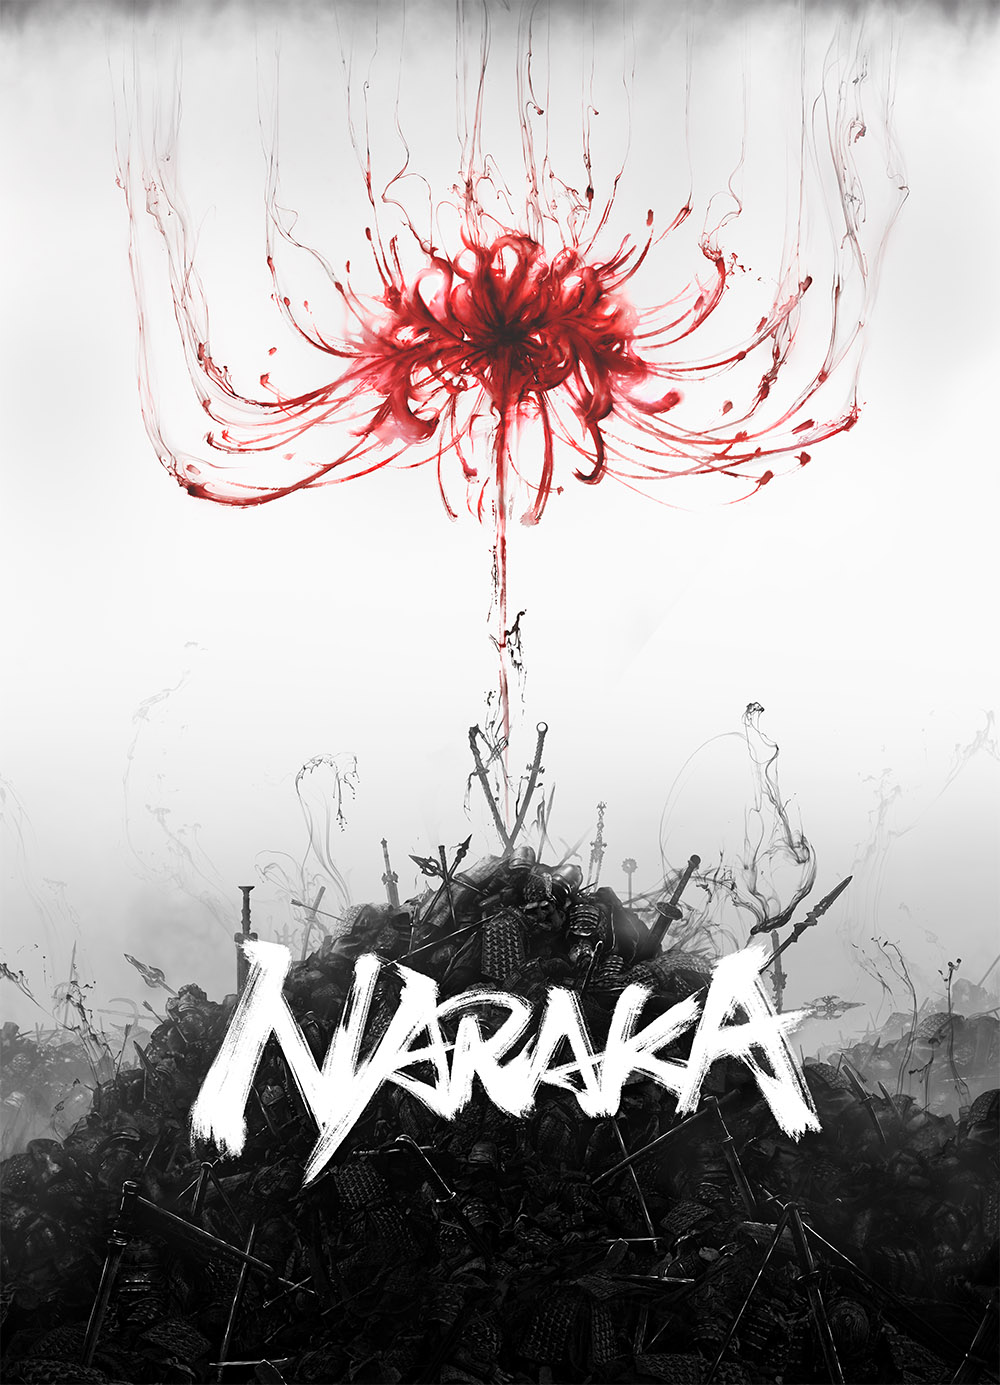 網易冷兵器動作新作《Naraka: Bladepoint》將在TGA上正式公布